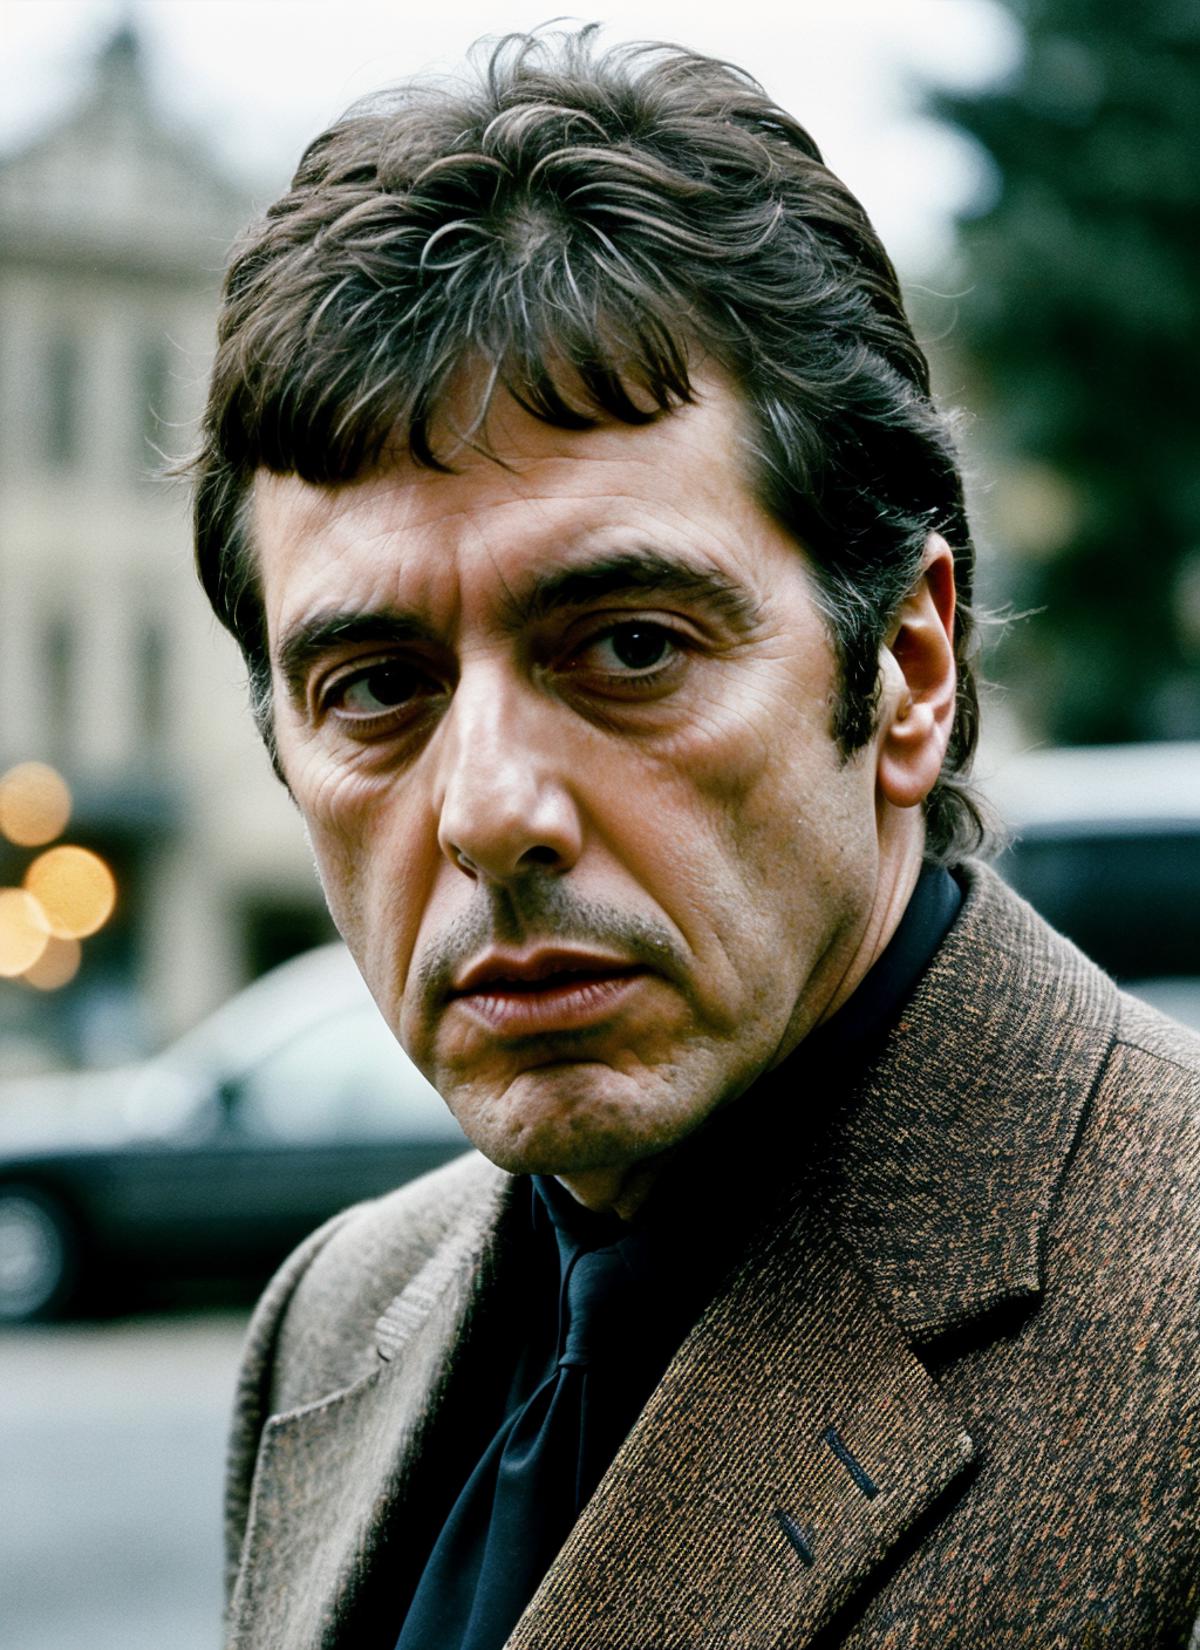 Al Pacino image by malcolmrey